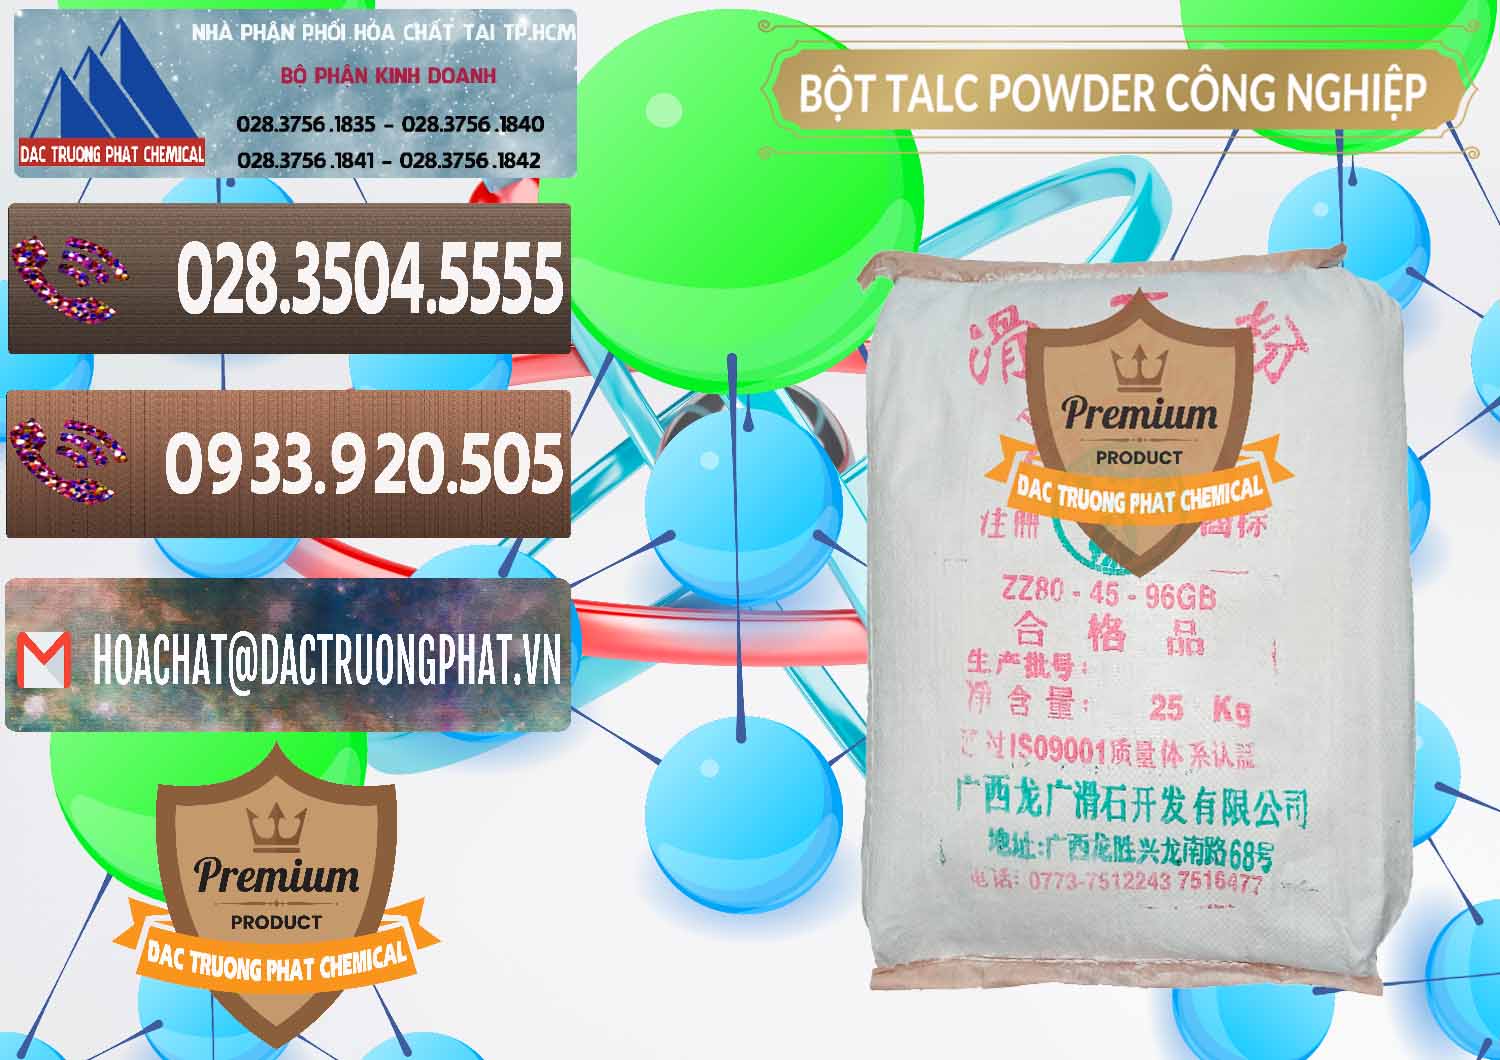 Công ty chuyên bán _ cung cấp Bột Talc Powder Công Nghiệp Trung Quốc China - 0037 - Công ty phân phối & cung cấp hóa chất tại TP.HCM - hoachatviet.net